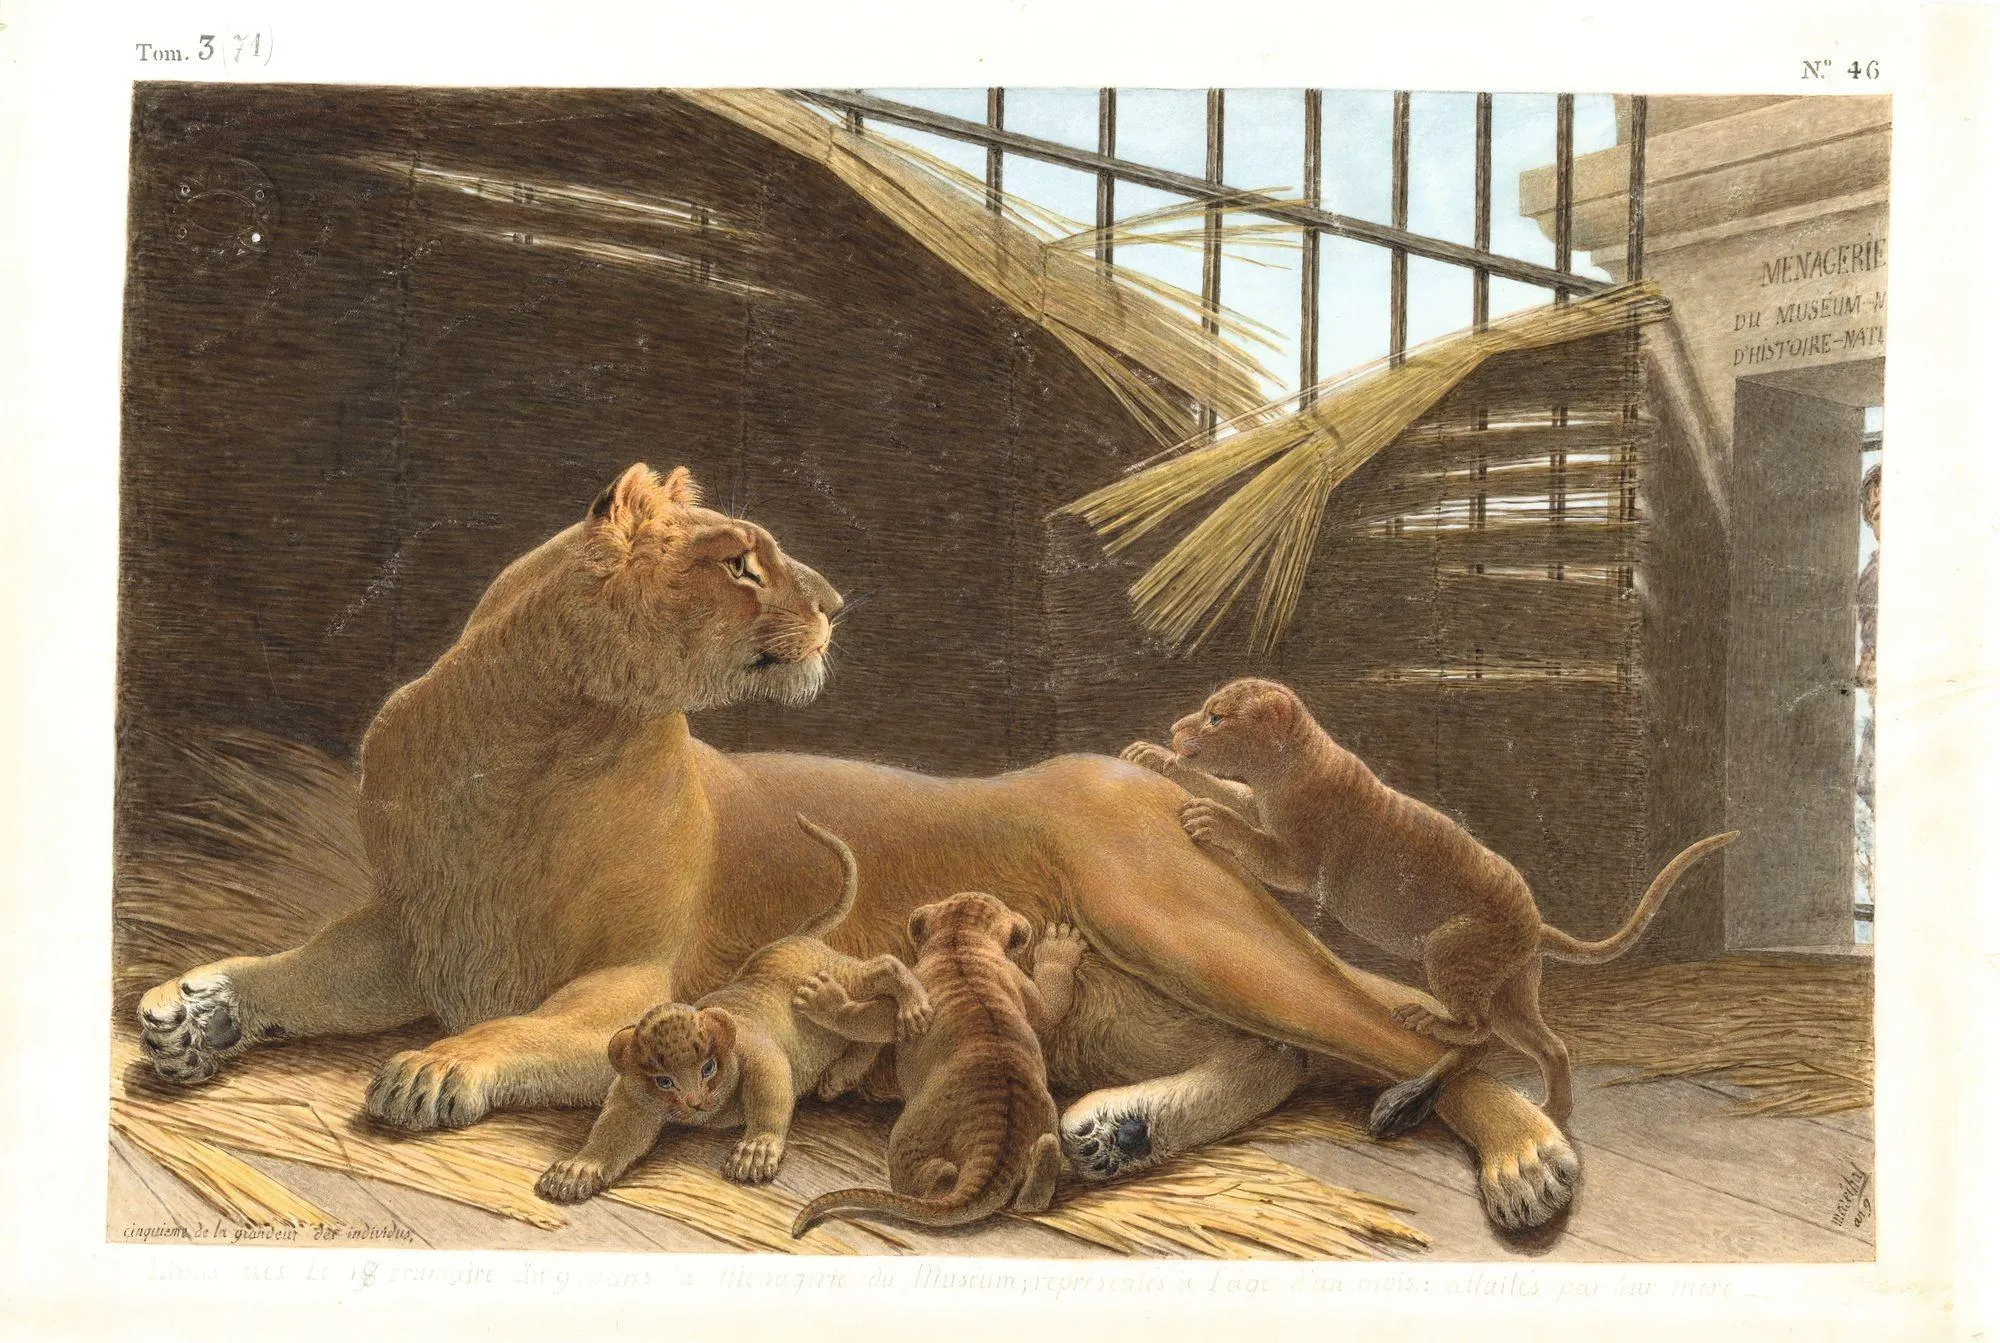 Nicolas Maréchal, Lions nés le 18 brumaire an IX, dans la ménagerie du Muséum, 1801, gouache sur vélin, 46 x 33 cm, bibliothèque du Muséum, Paris.